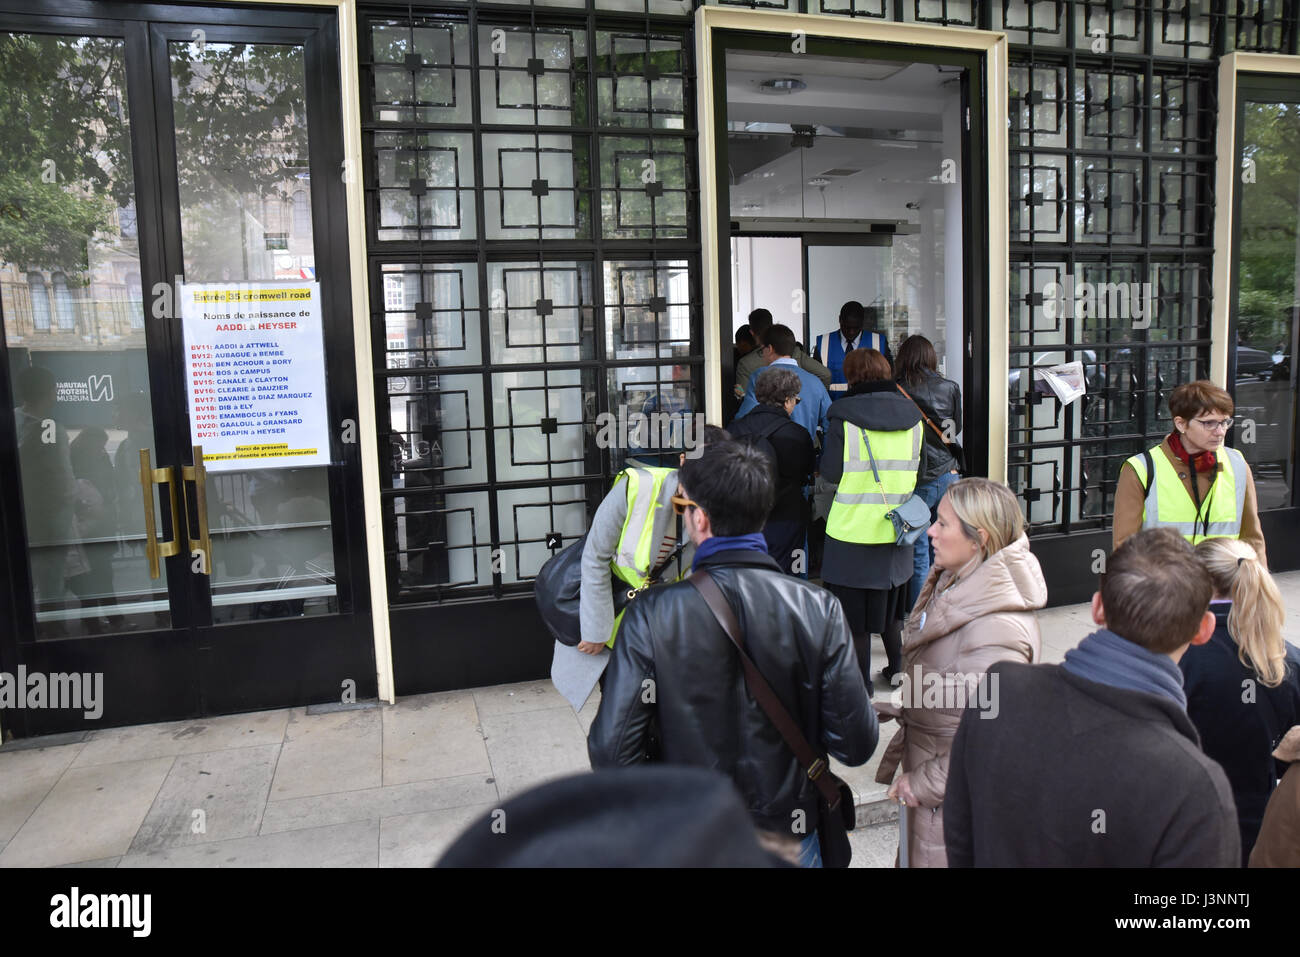 South Kensington, London, UK. 7 mai 2017. Français expatrié à South Kensington, Londres, le vote dans les élections Françaises. Crédit : Matthieu Chattle/Alamy Live News Banque D'Images